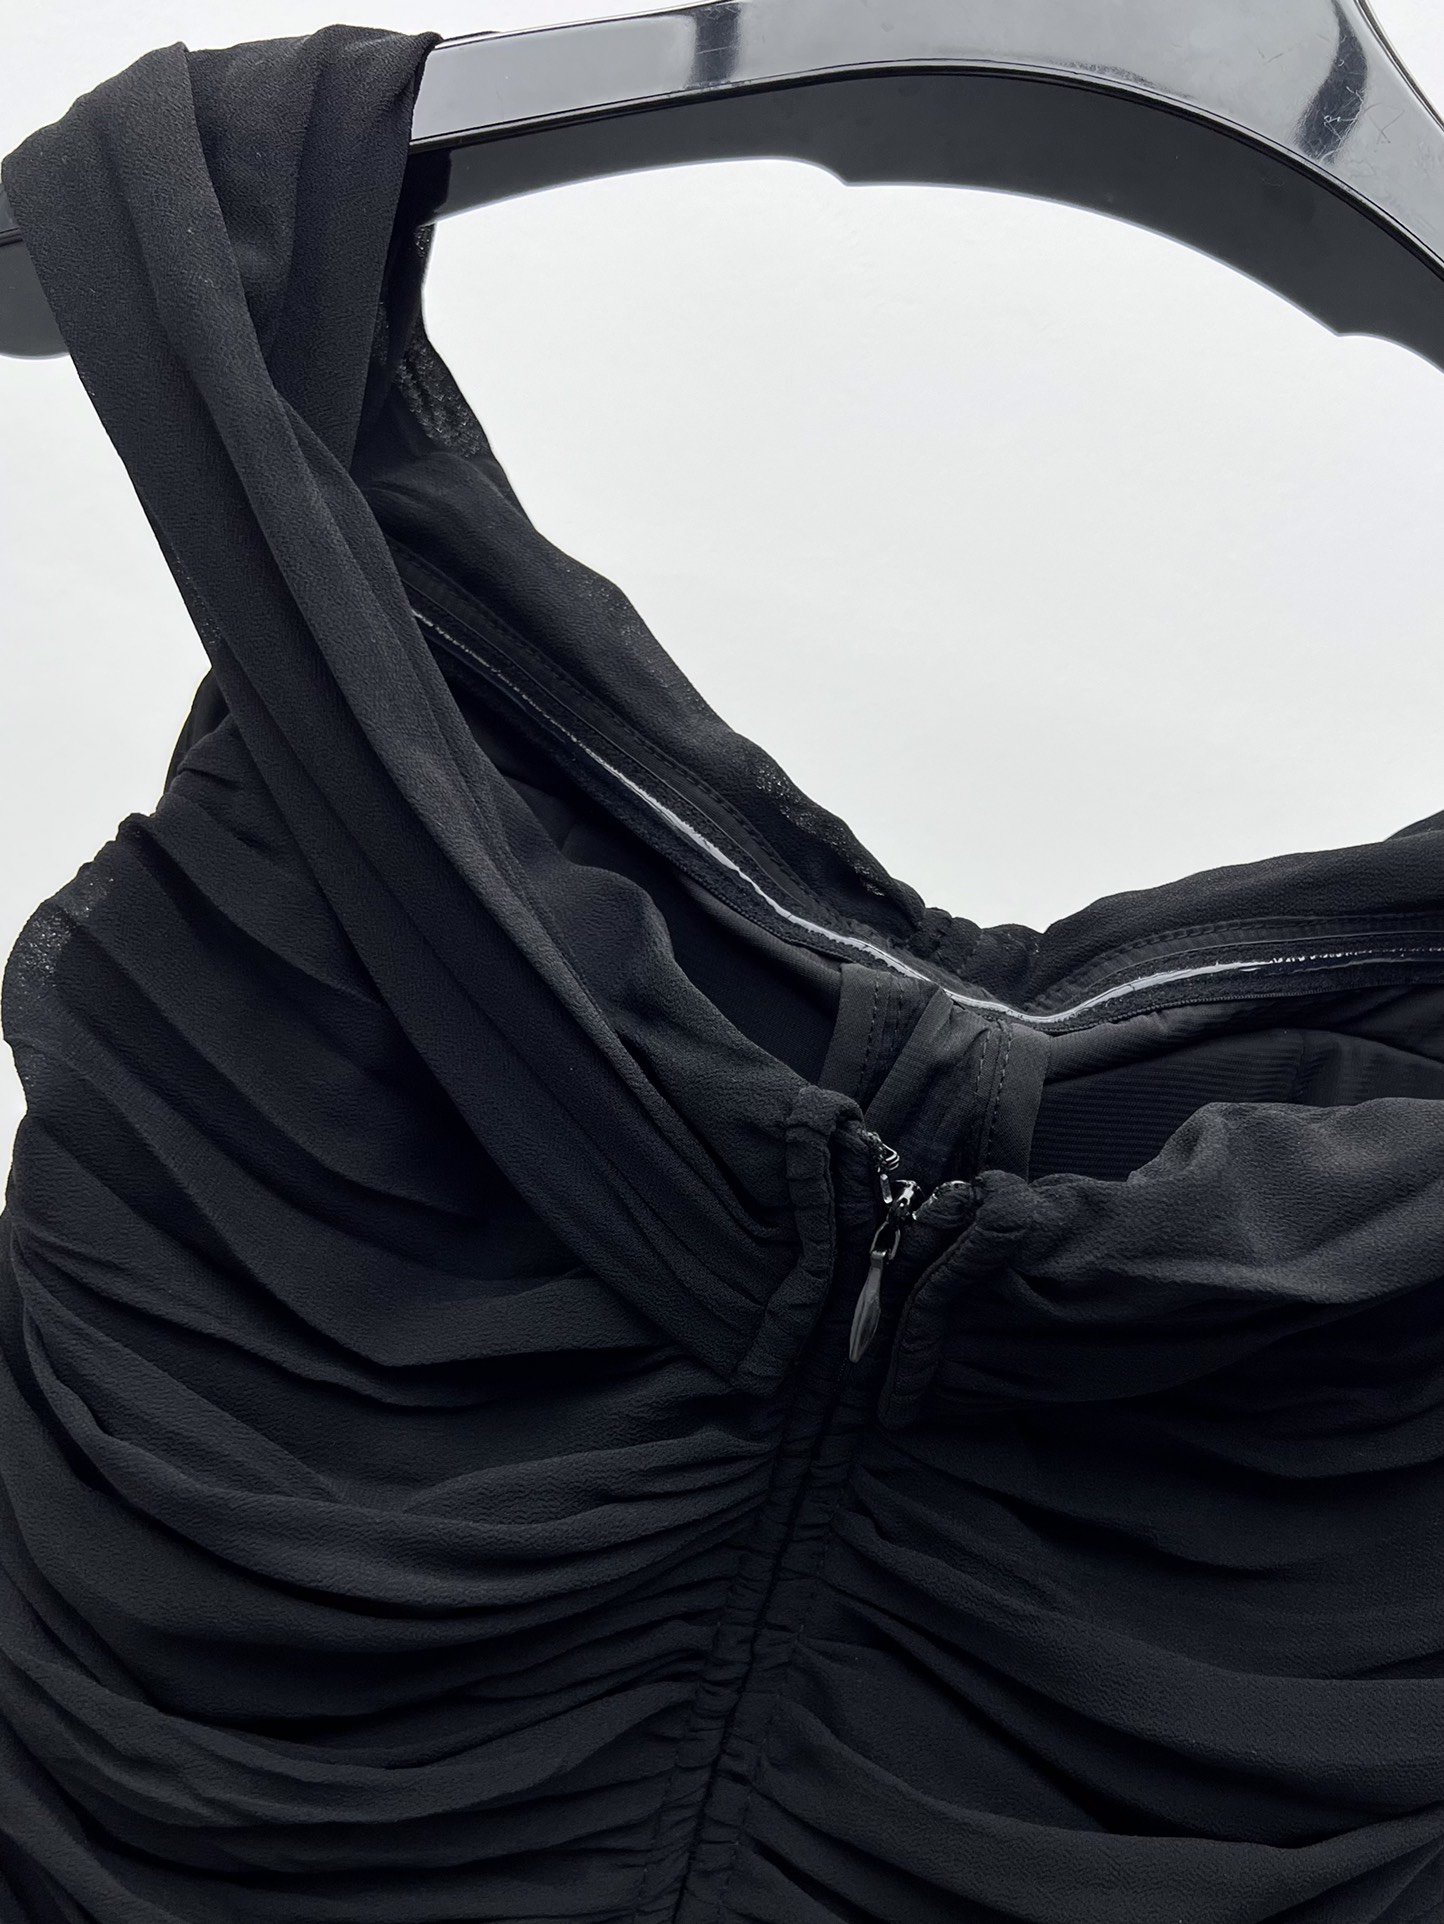 Платье мини черное (шелк 100%) фото 6